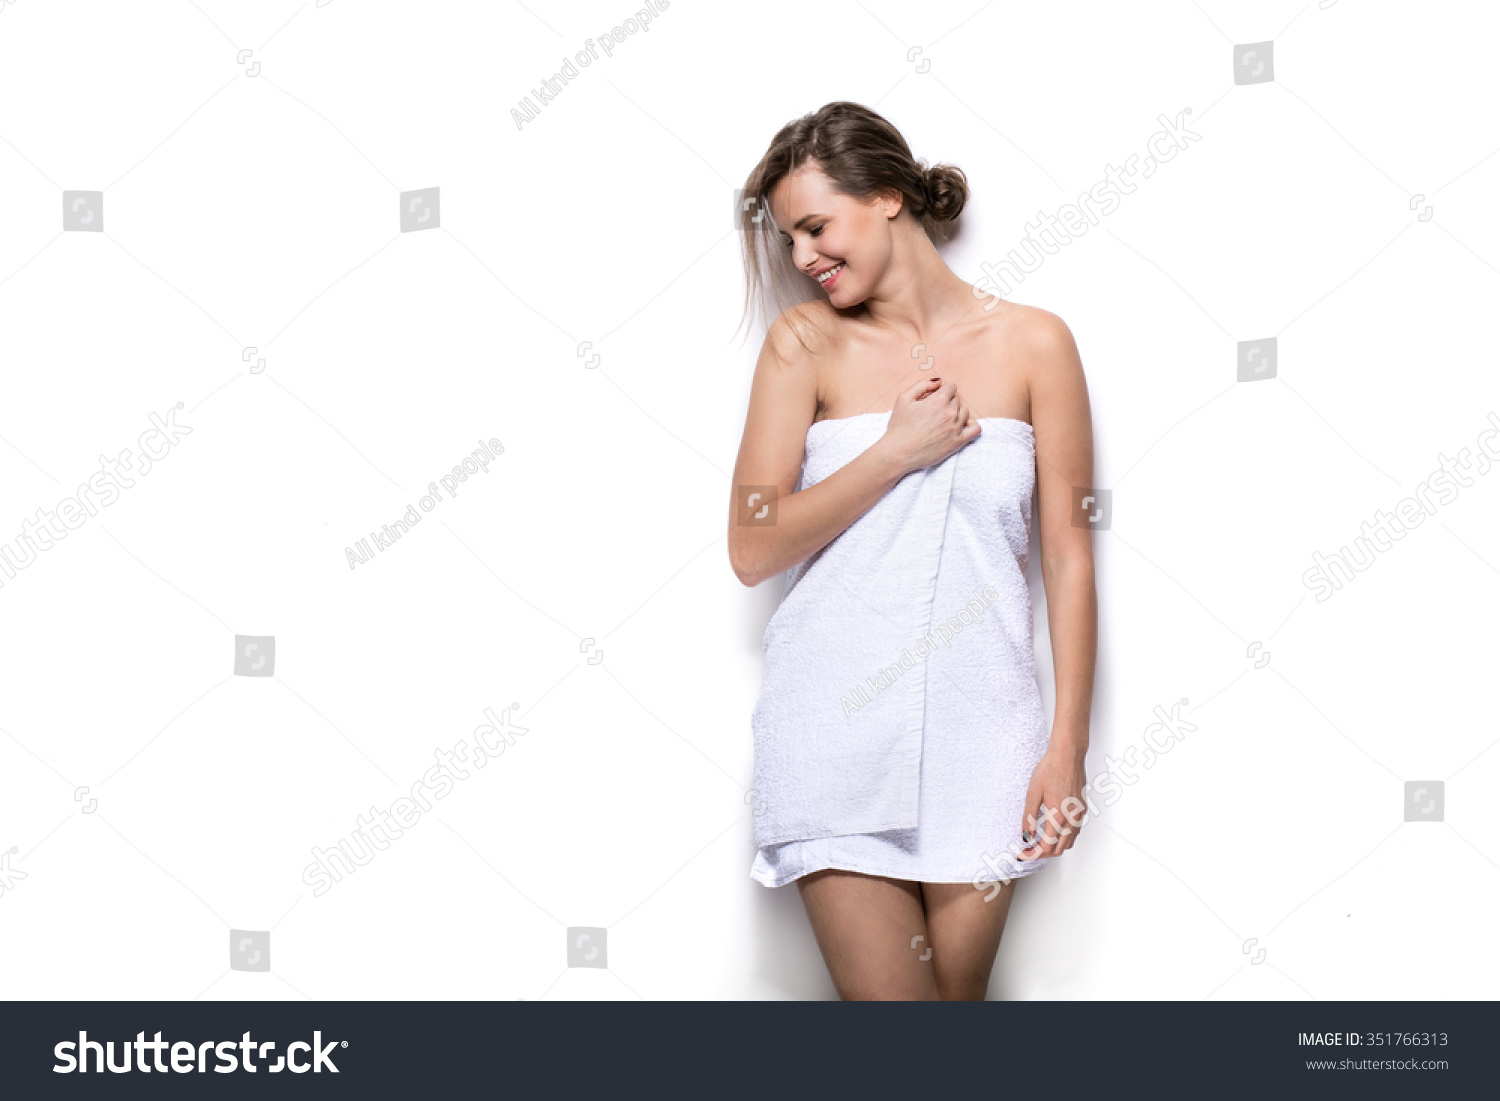 Студентка вышла из душа и вытирается при помощи полотенца